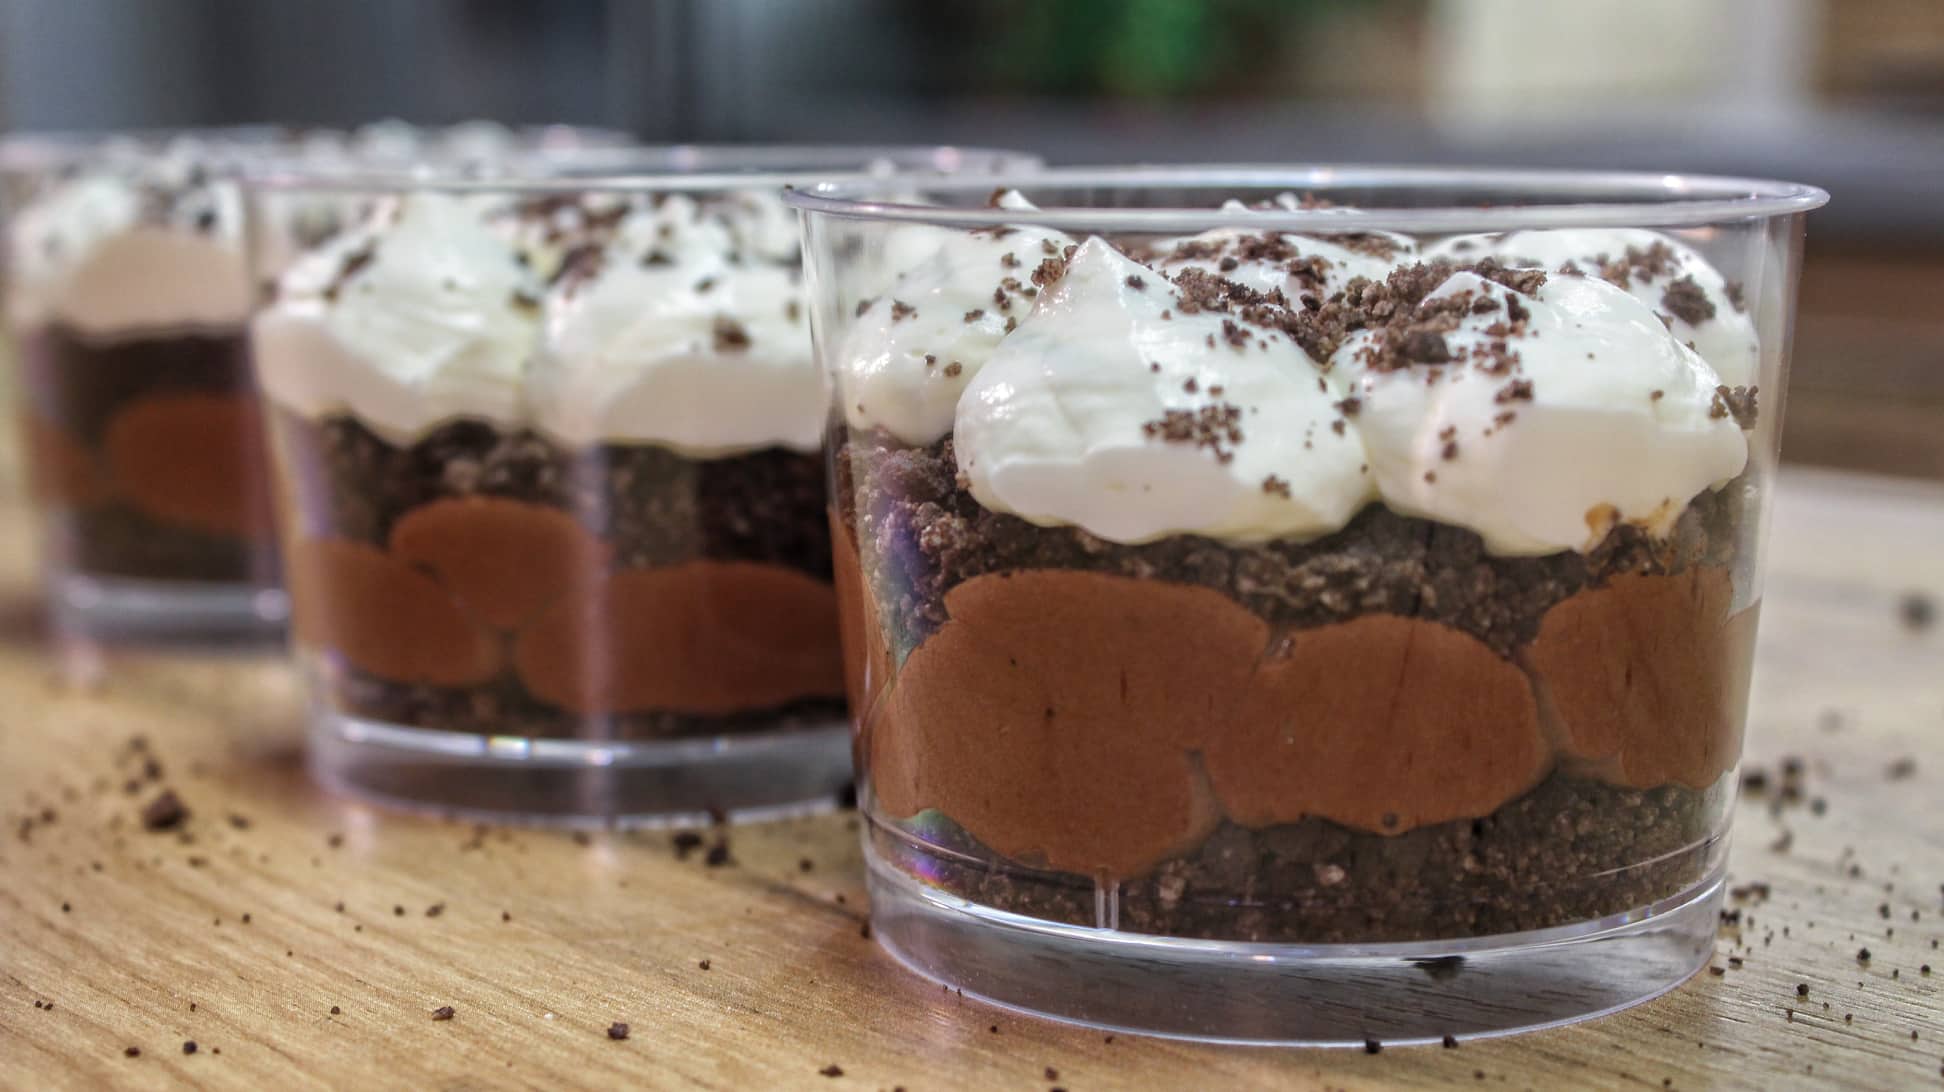 Ατομικό γλυκό σε ποτήρι με Oreo και 3 Υλικά σε 10 λεπτά -3 Ingredient Chocolate Mousse Trifle